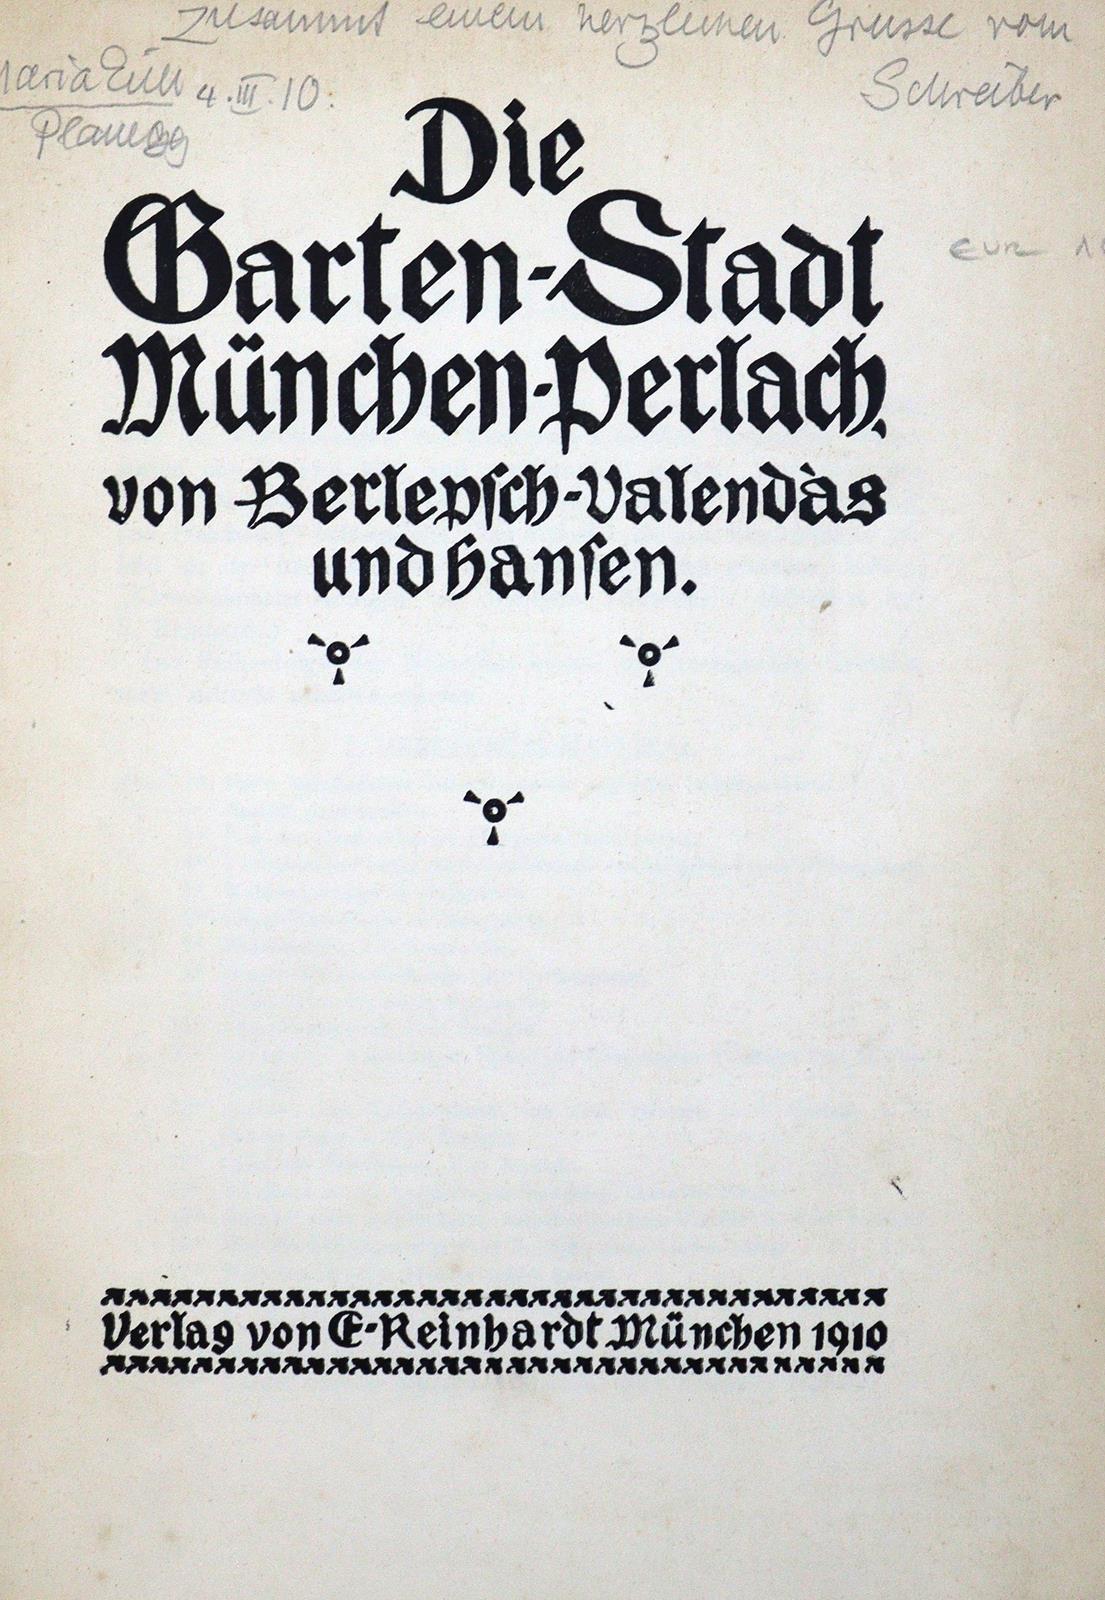 Berlepsch-Valendas,(H.E.)v. u. (A.)Hansen. | Bild Nr.2